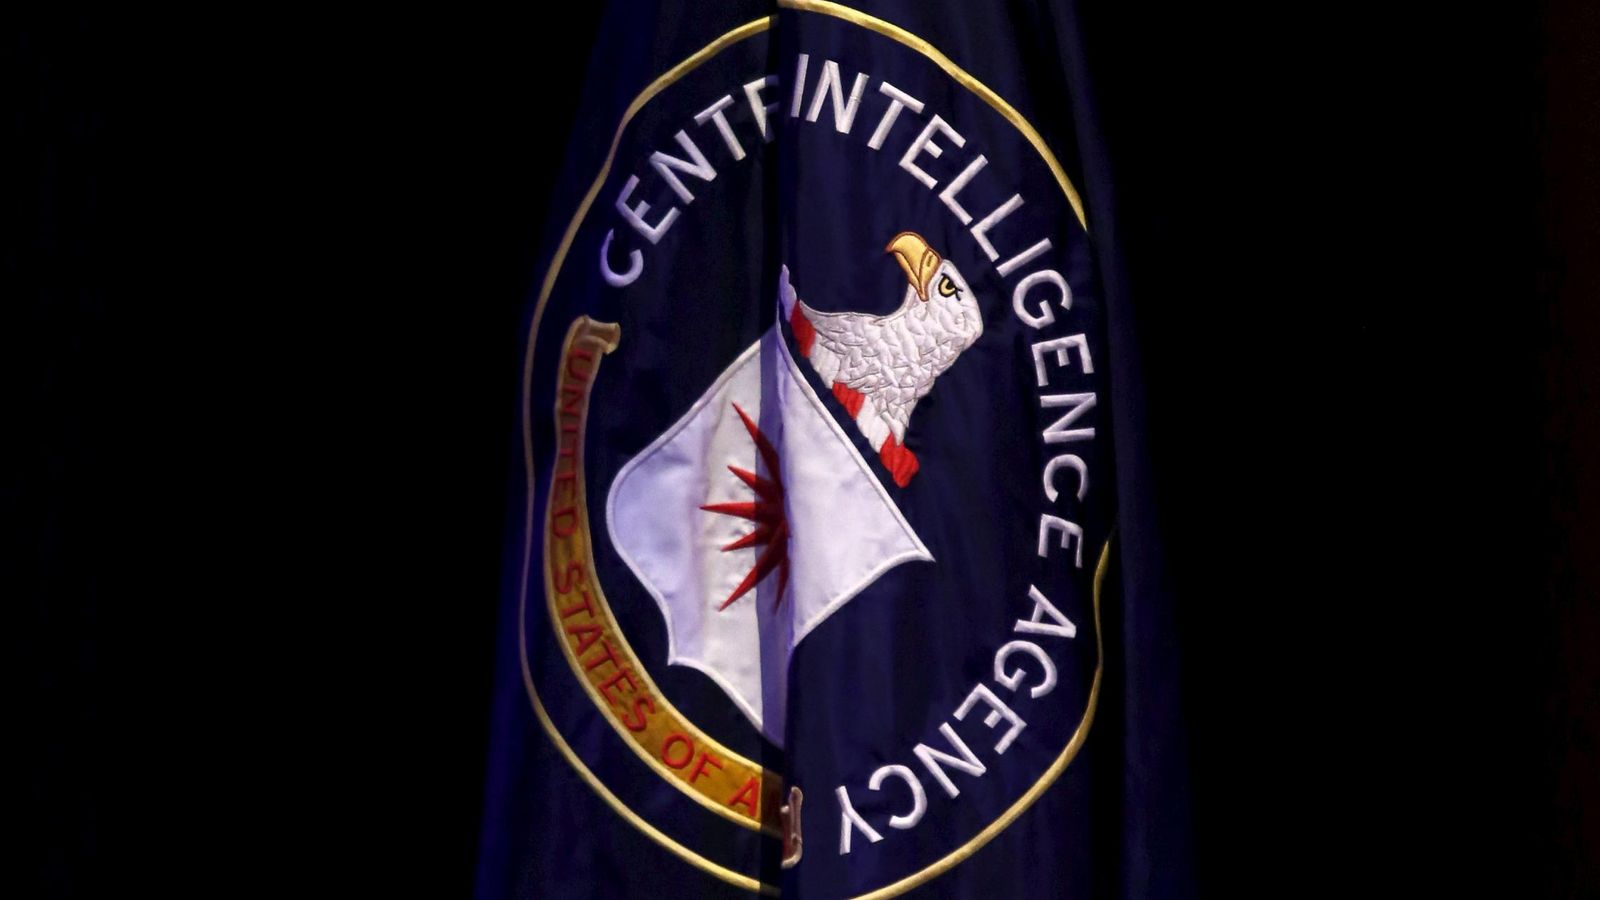 Foto: La bandera de la CIA es desplegada durante una conferencia sobre seguridad nacional en Washington, el 27 de octubre de 2015 (Reuters)